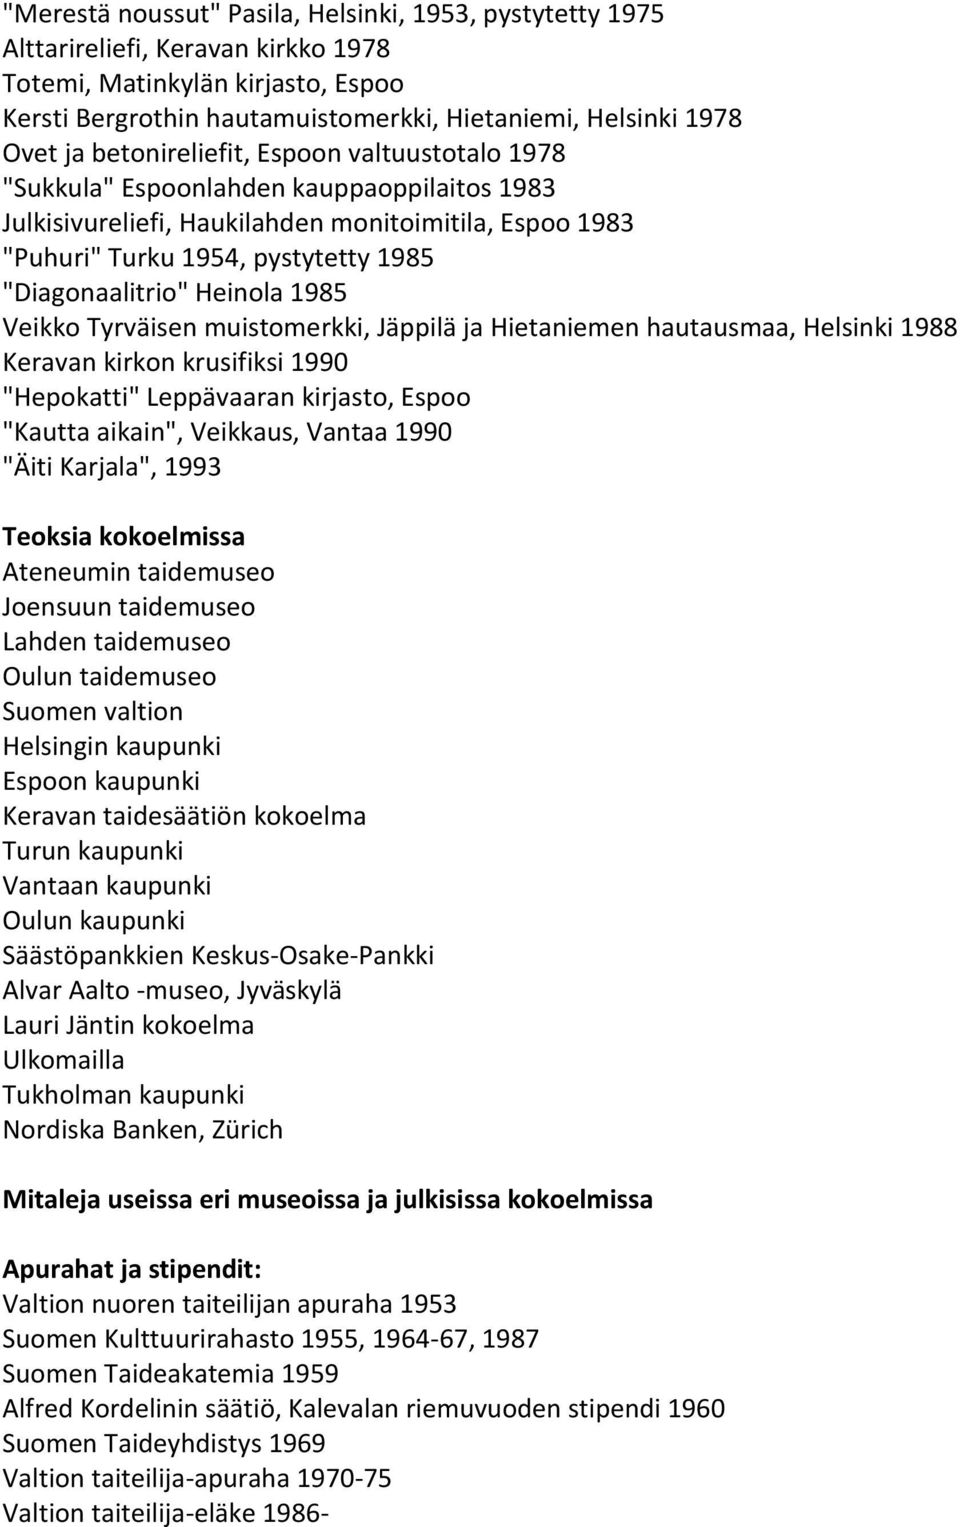 Heinola 1985 Veikko Tyrväisen muistomerkki, Jäppilä ja Hietaniemen hautausmaa, Helsinki 1988 Keravan kirkon krusifiksi 1990 "Hepokatti" Leppävaaran kirjasto, Espoo "Kautta aikain", Veikkaus, Vantaa